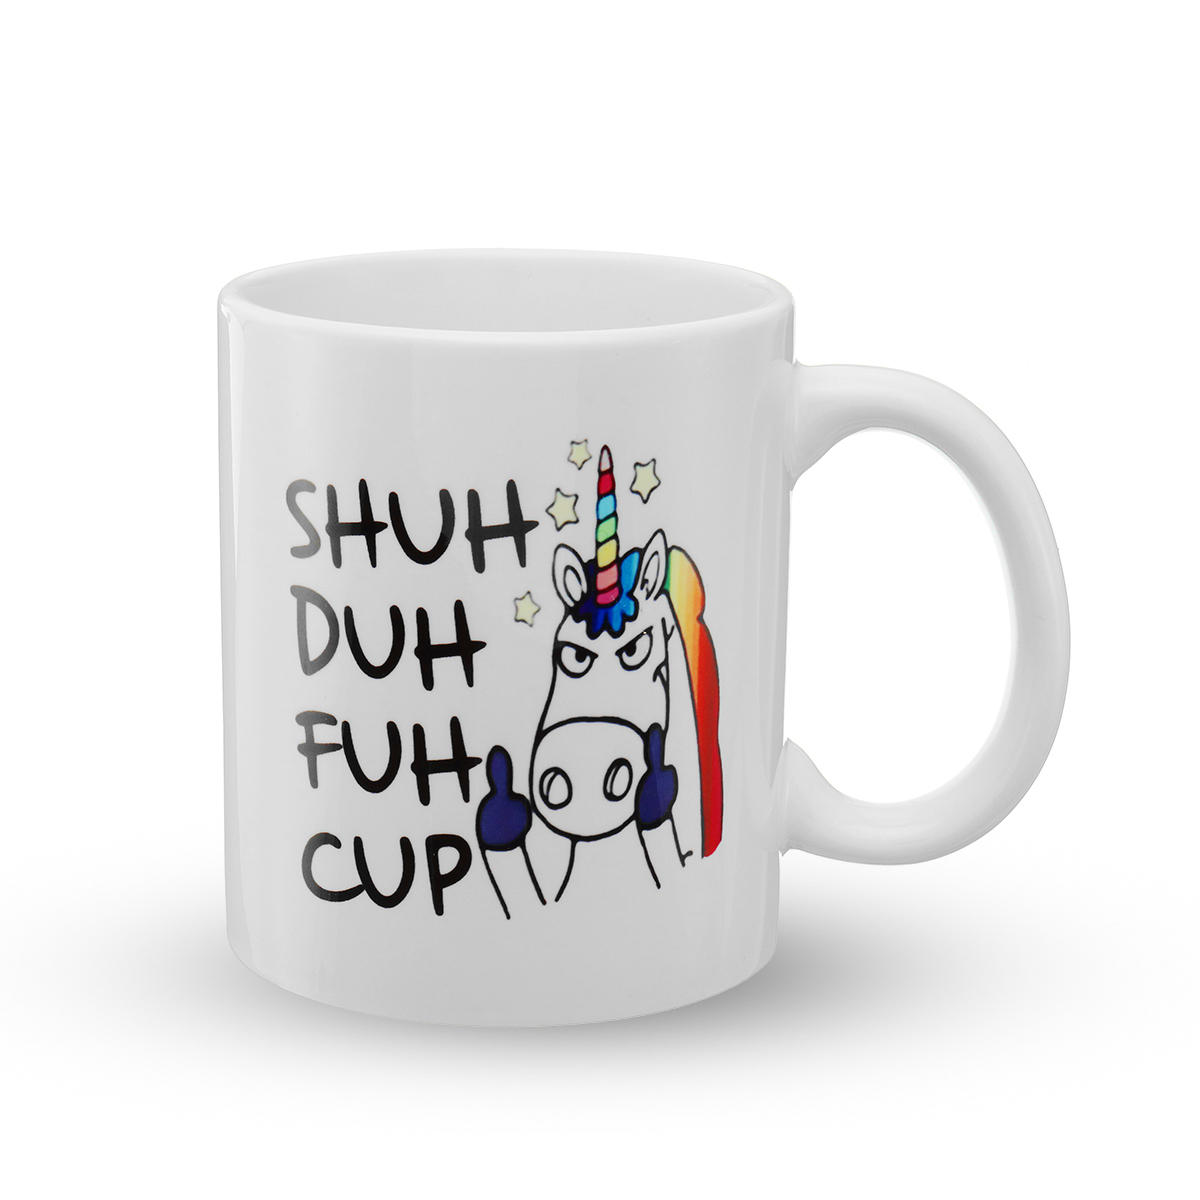 Shuh Duh Fuh Cup Mug Funny Coffee Mug Work Mug Office Gift Gift For Her Mug